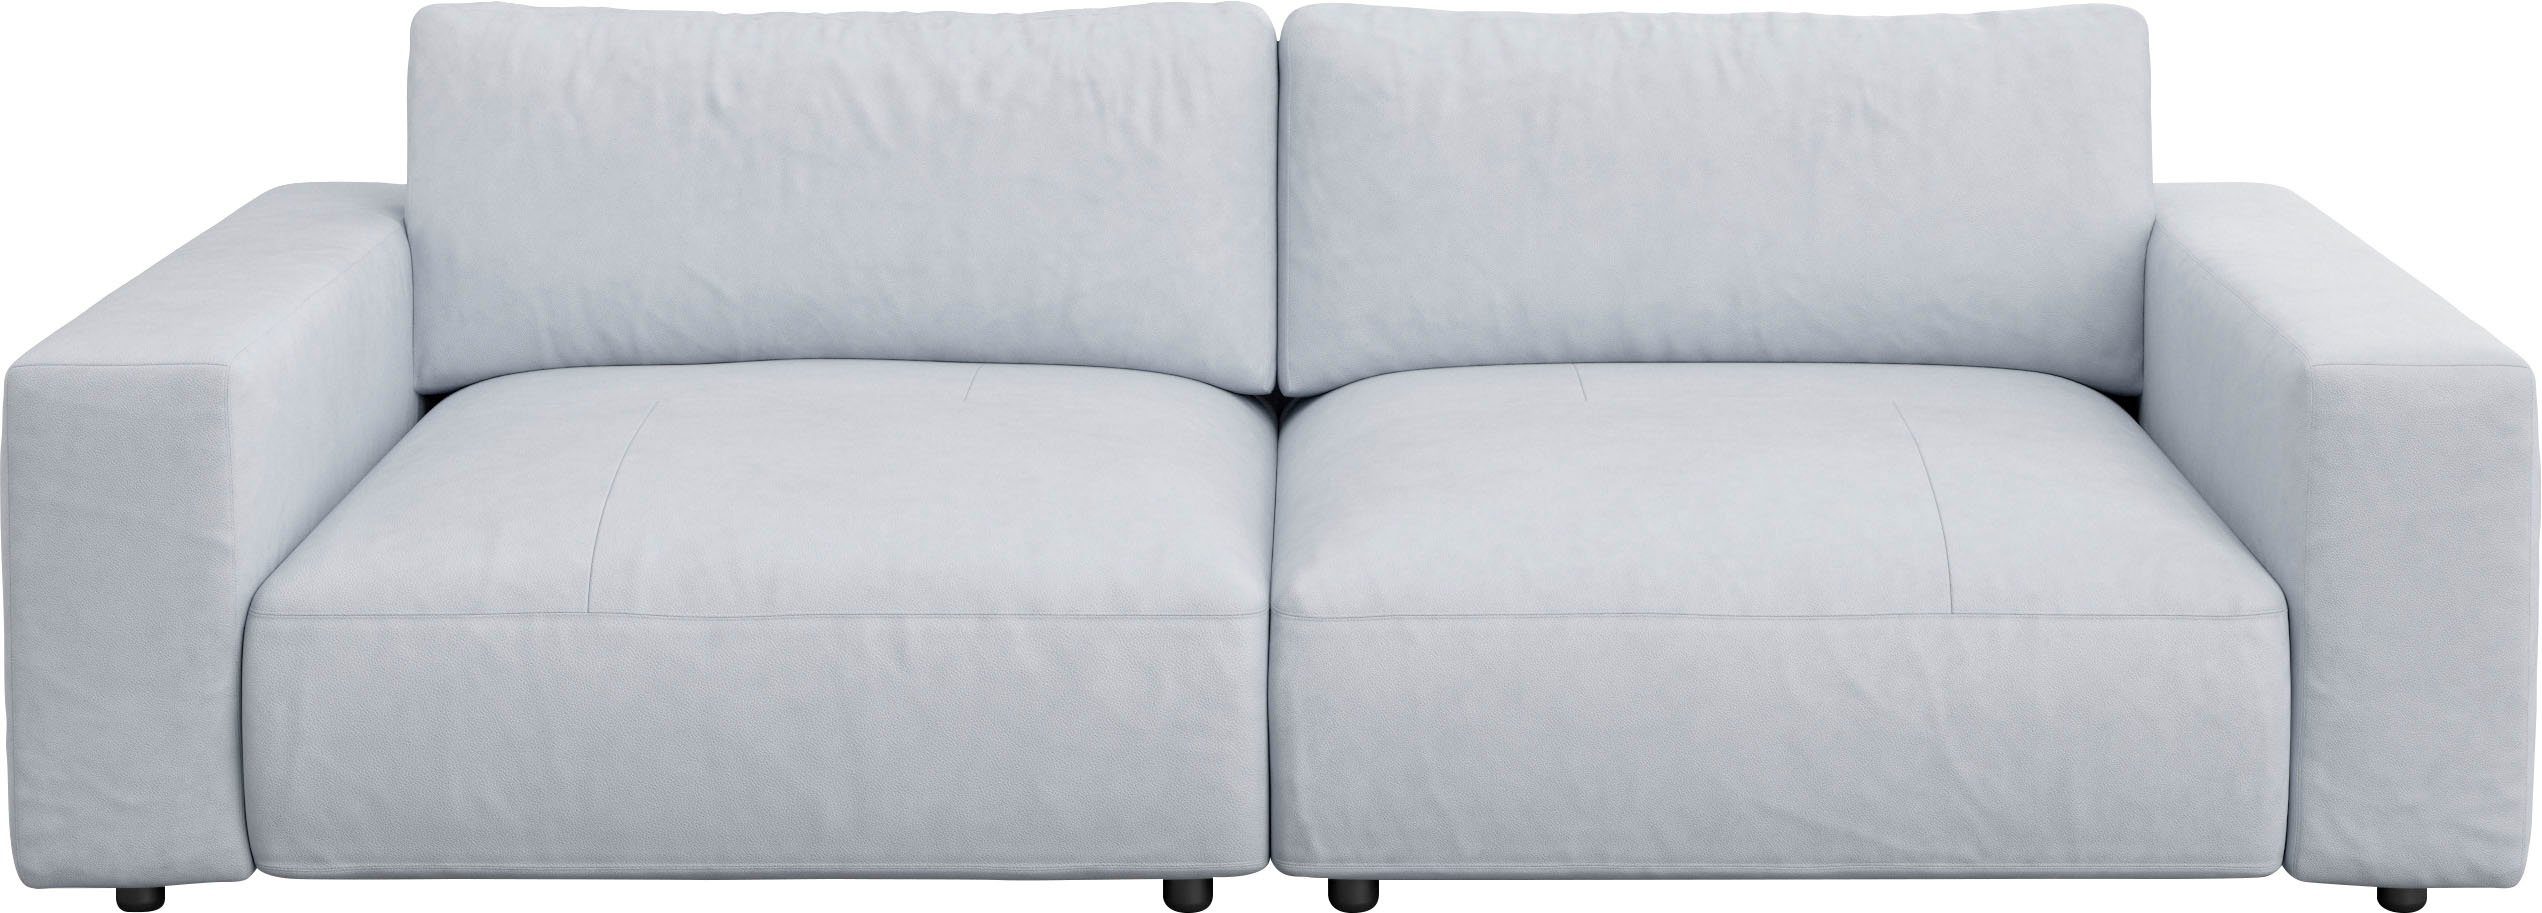 GALLERY M branded vielen Big-Sofa und Musterring 4 Nähten, unterschiedlichen 2,5-Sitzer Qualitäten by LUCIA, in